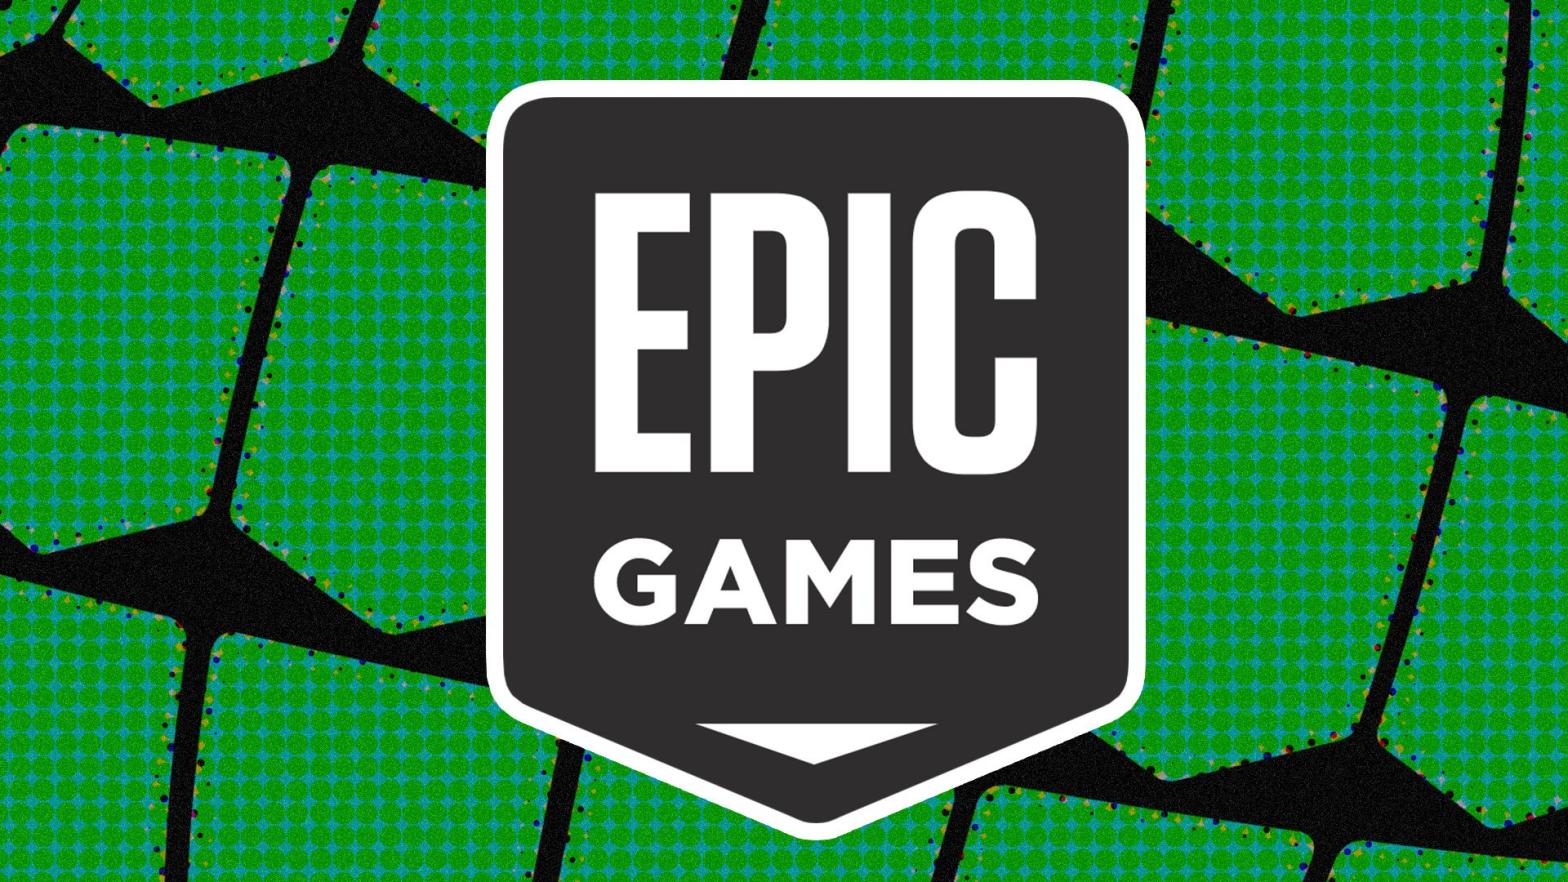 Image: Epic Games / Kotaku